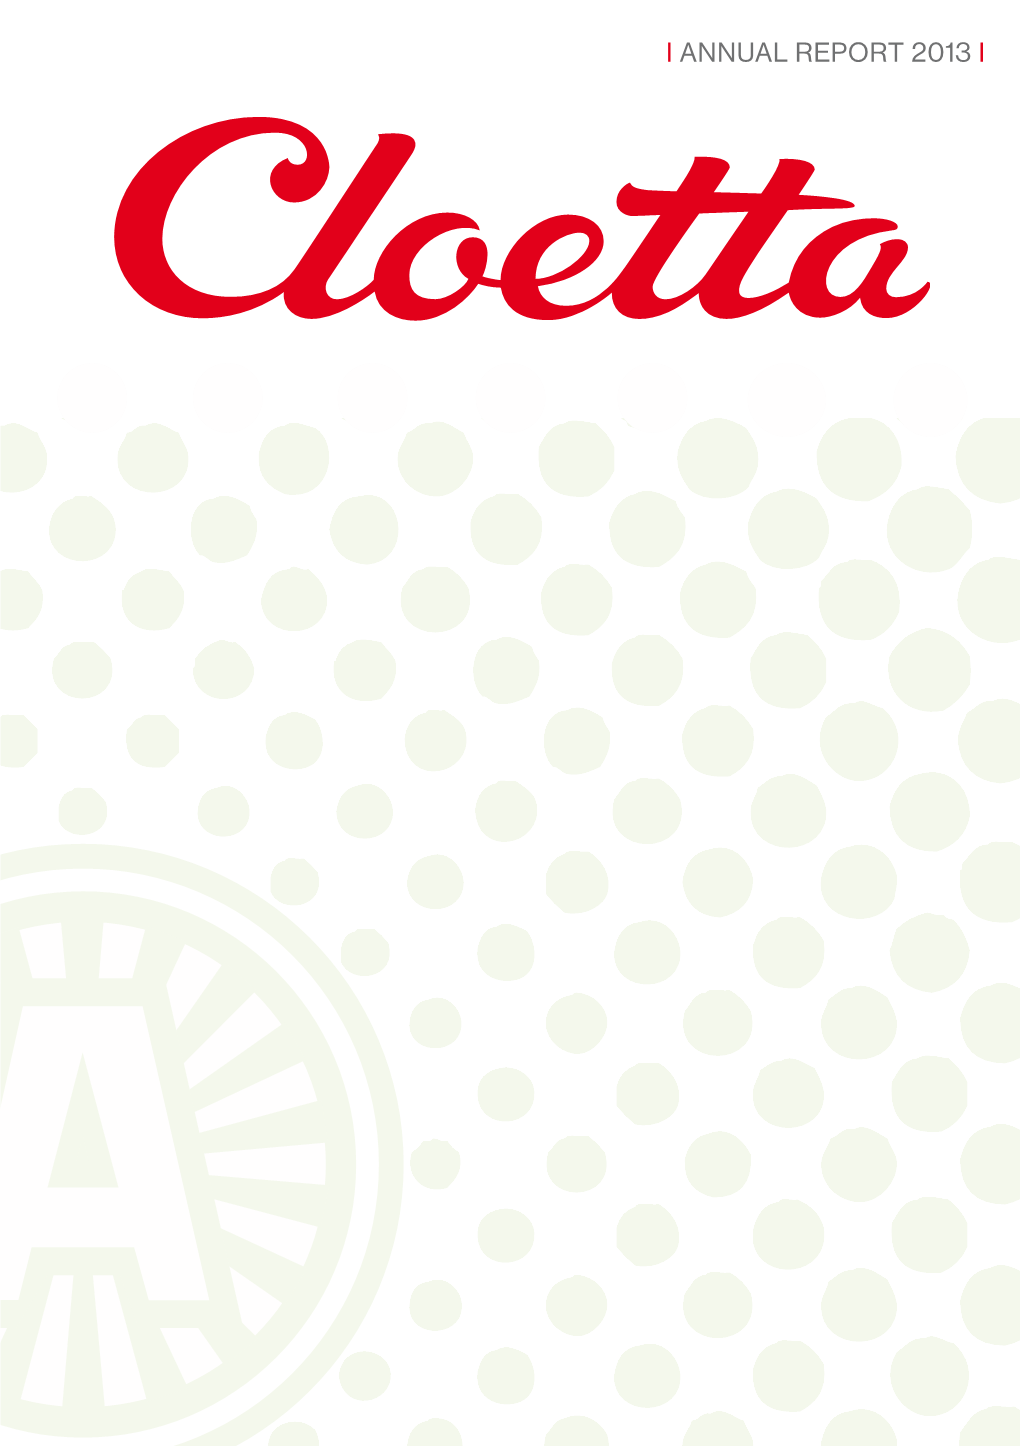 Cloetta Annual Report 2013